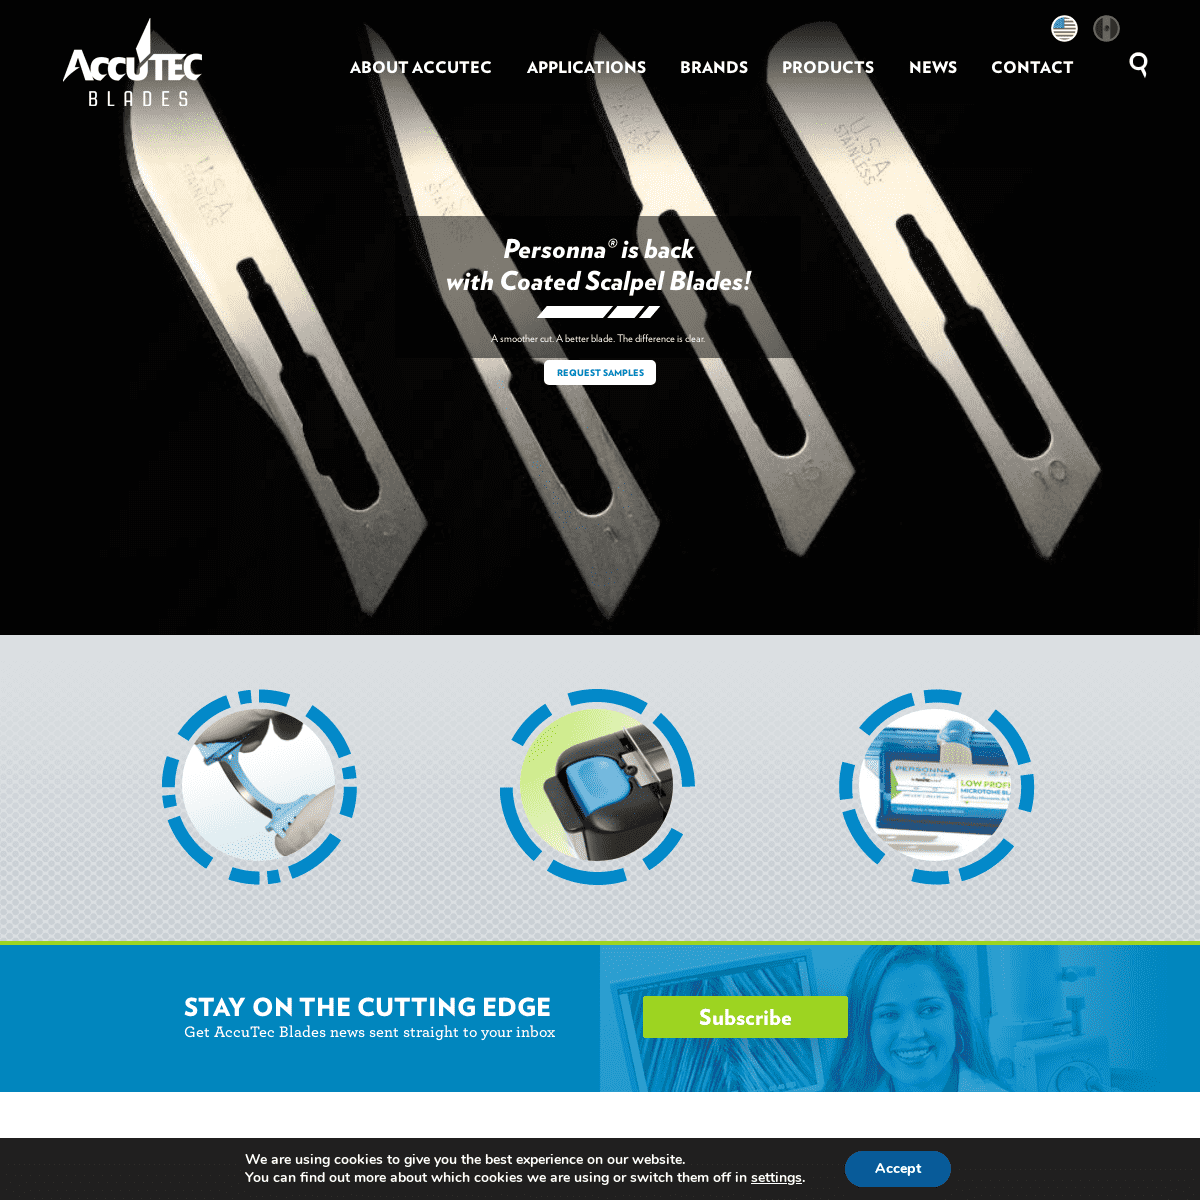 A complete backup of atblades.com